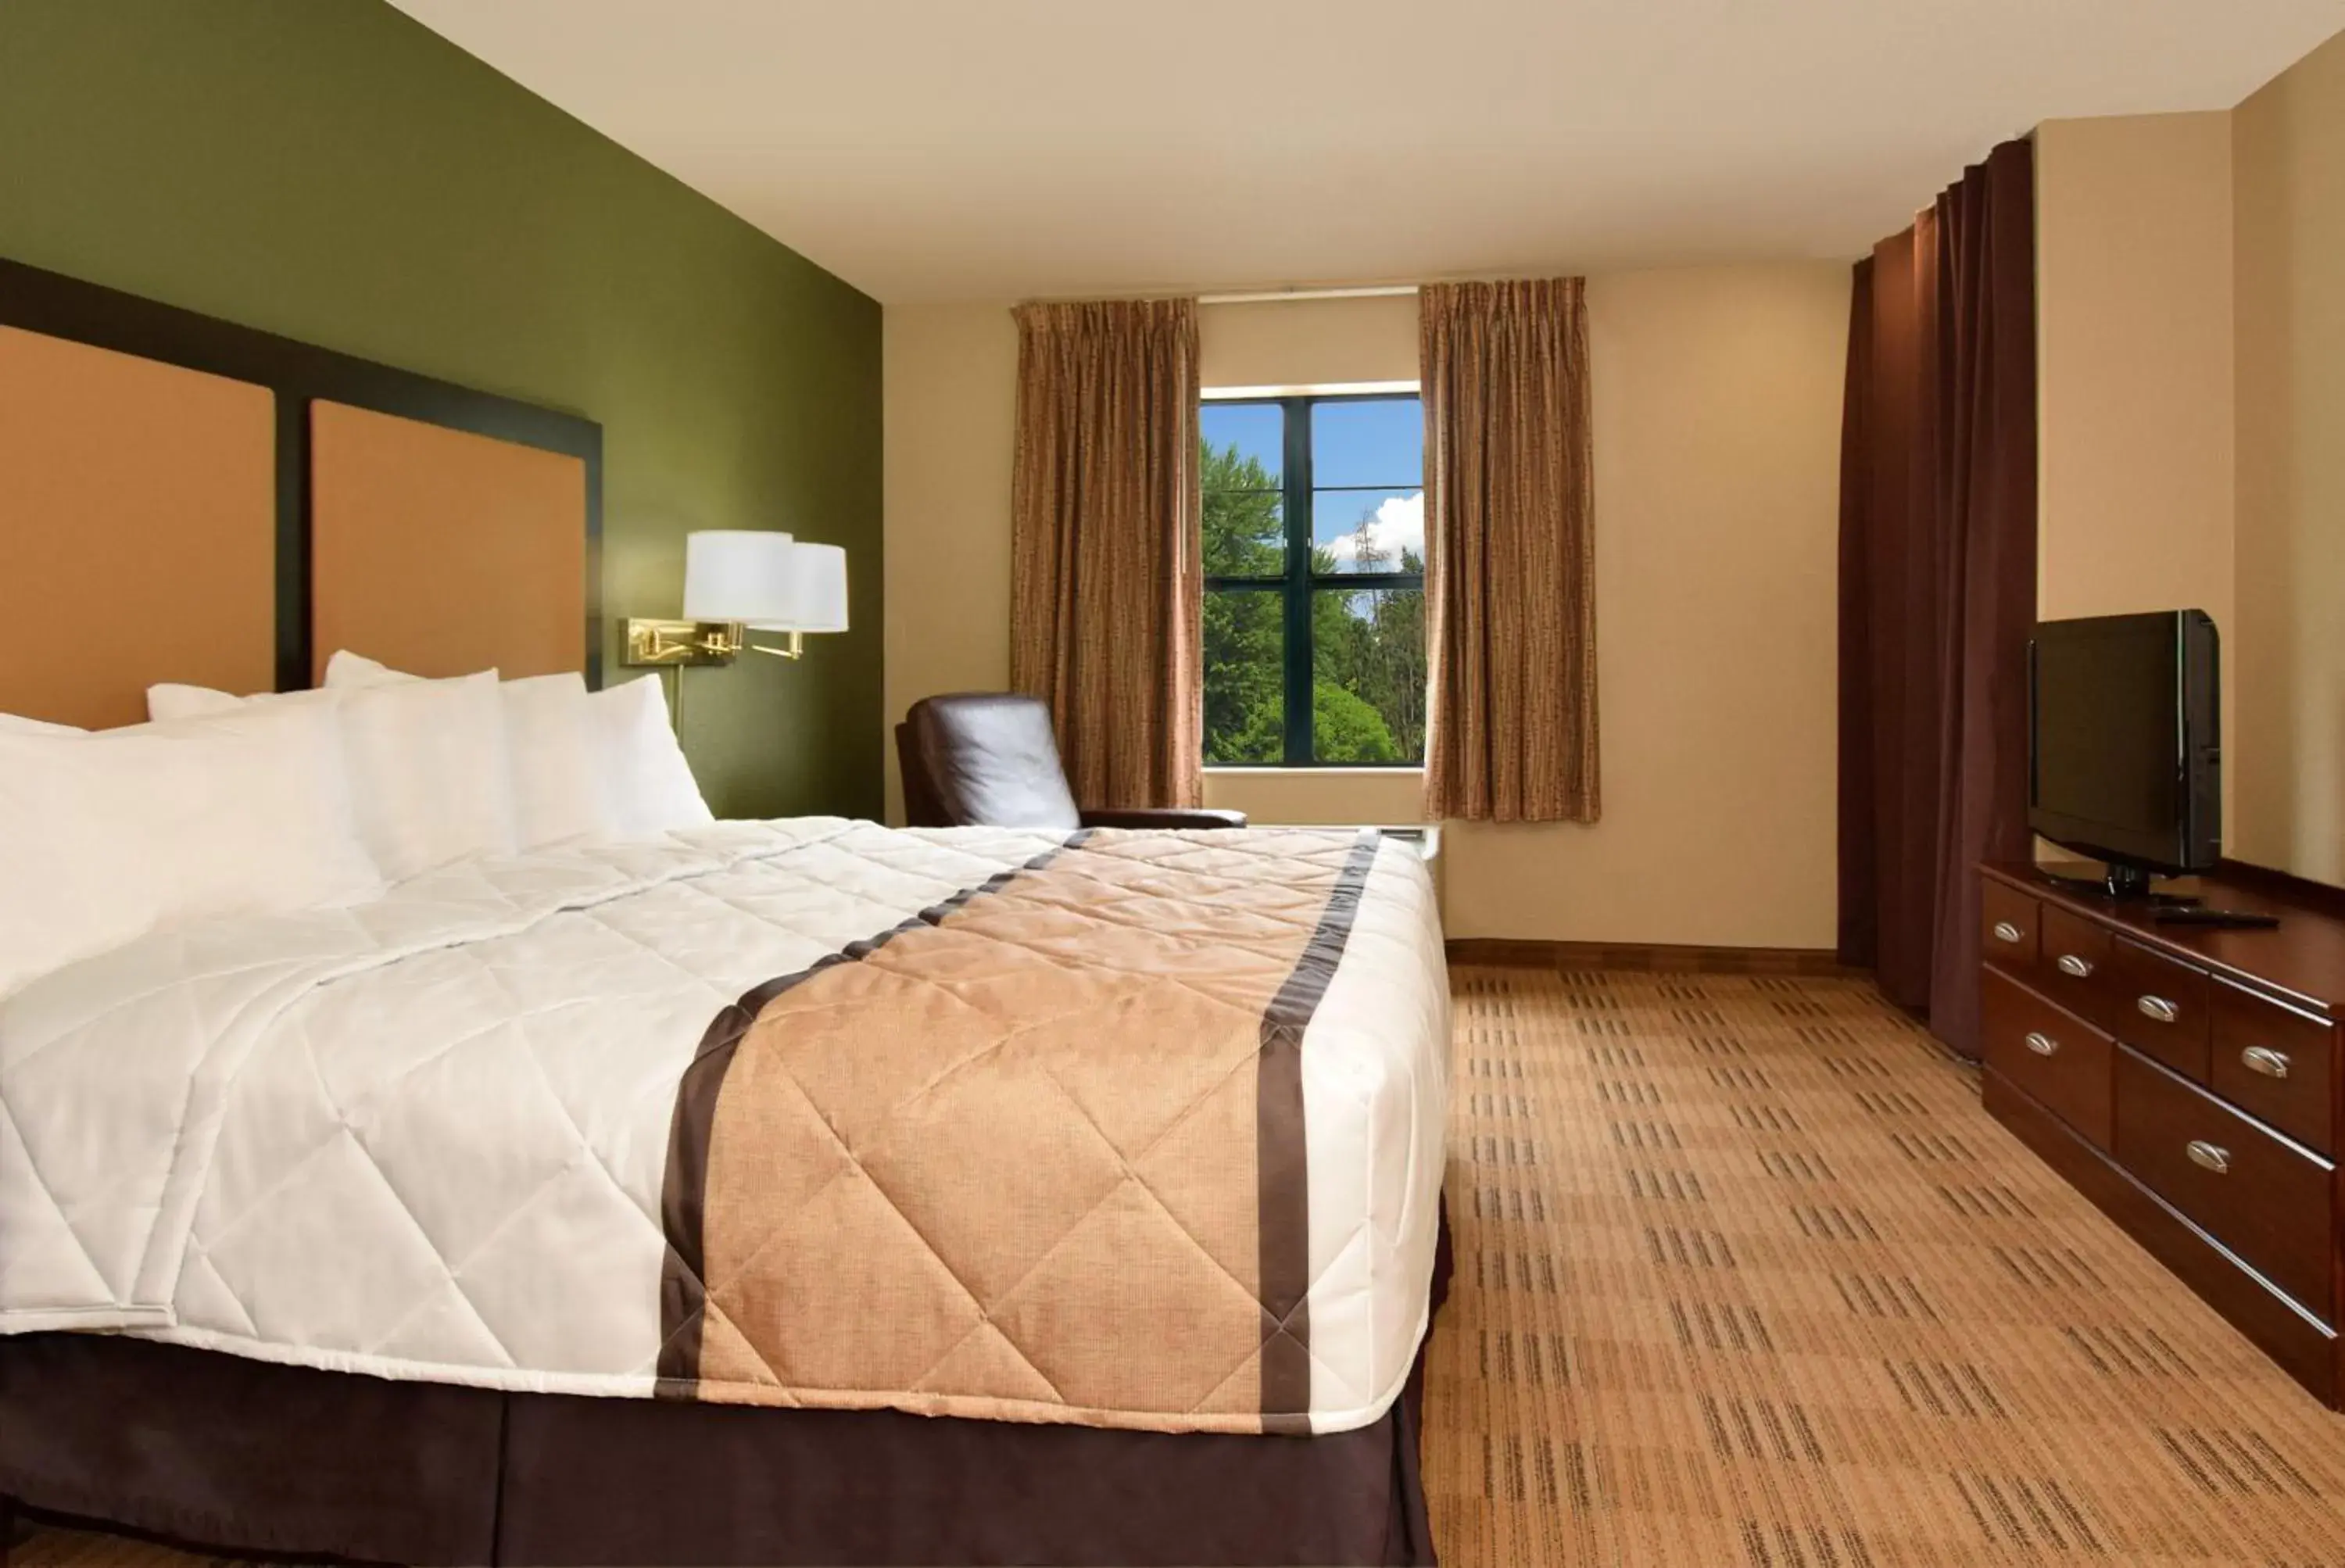 Bed in Extended Stay America Suites - Savannah - Midtown